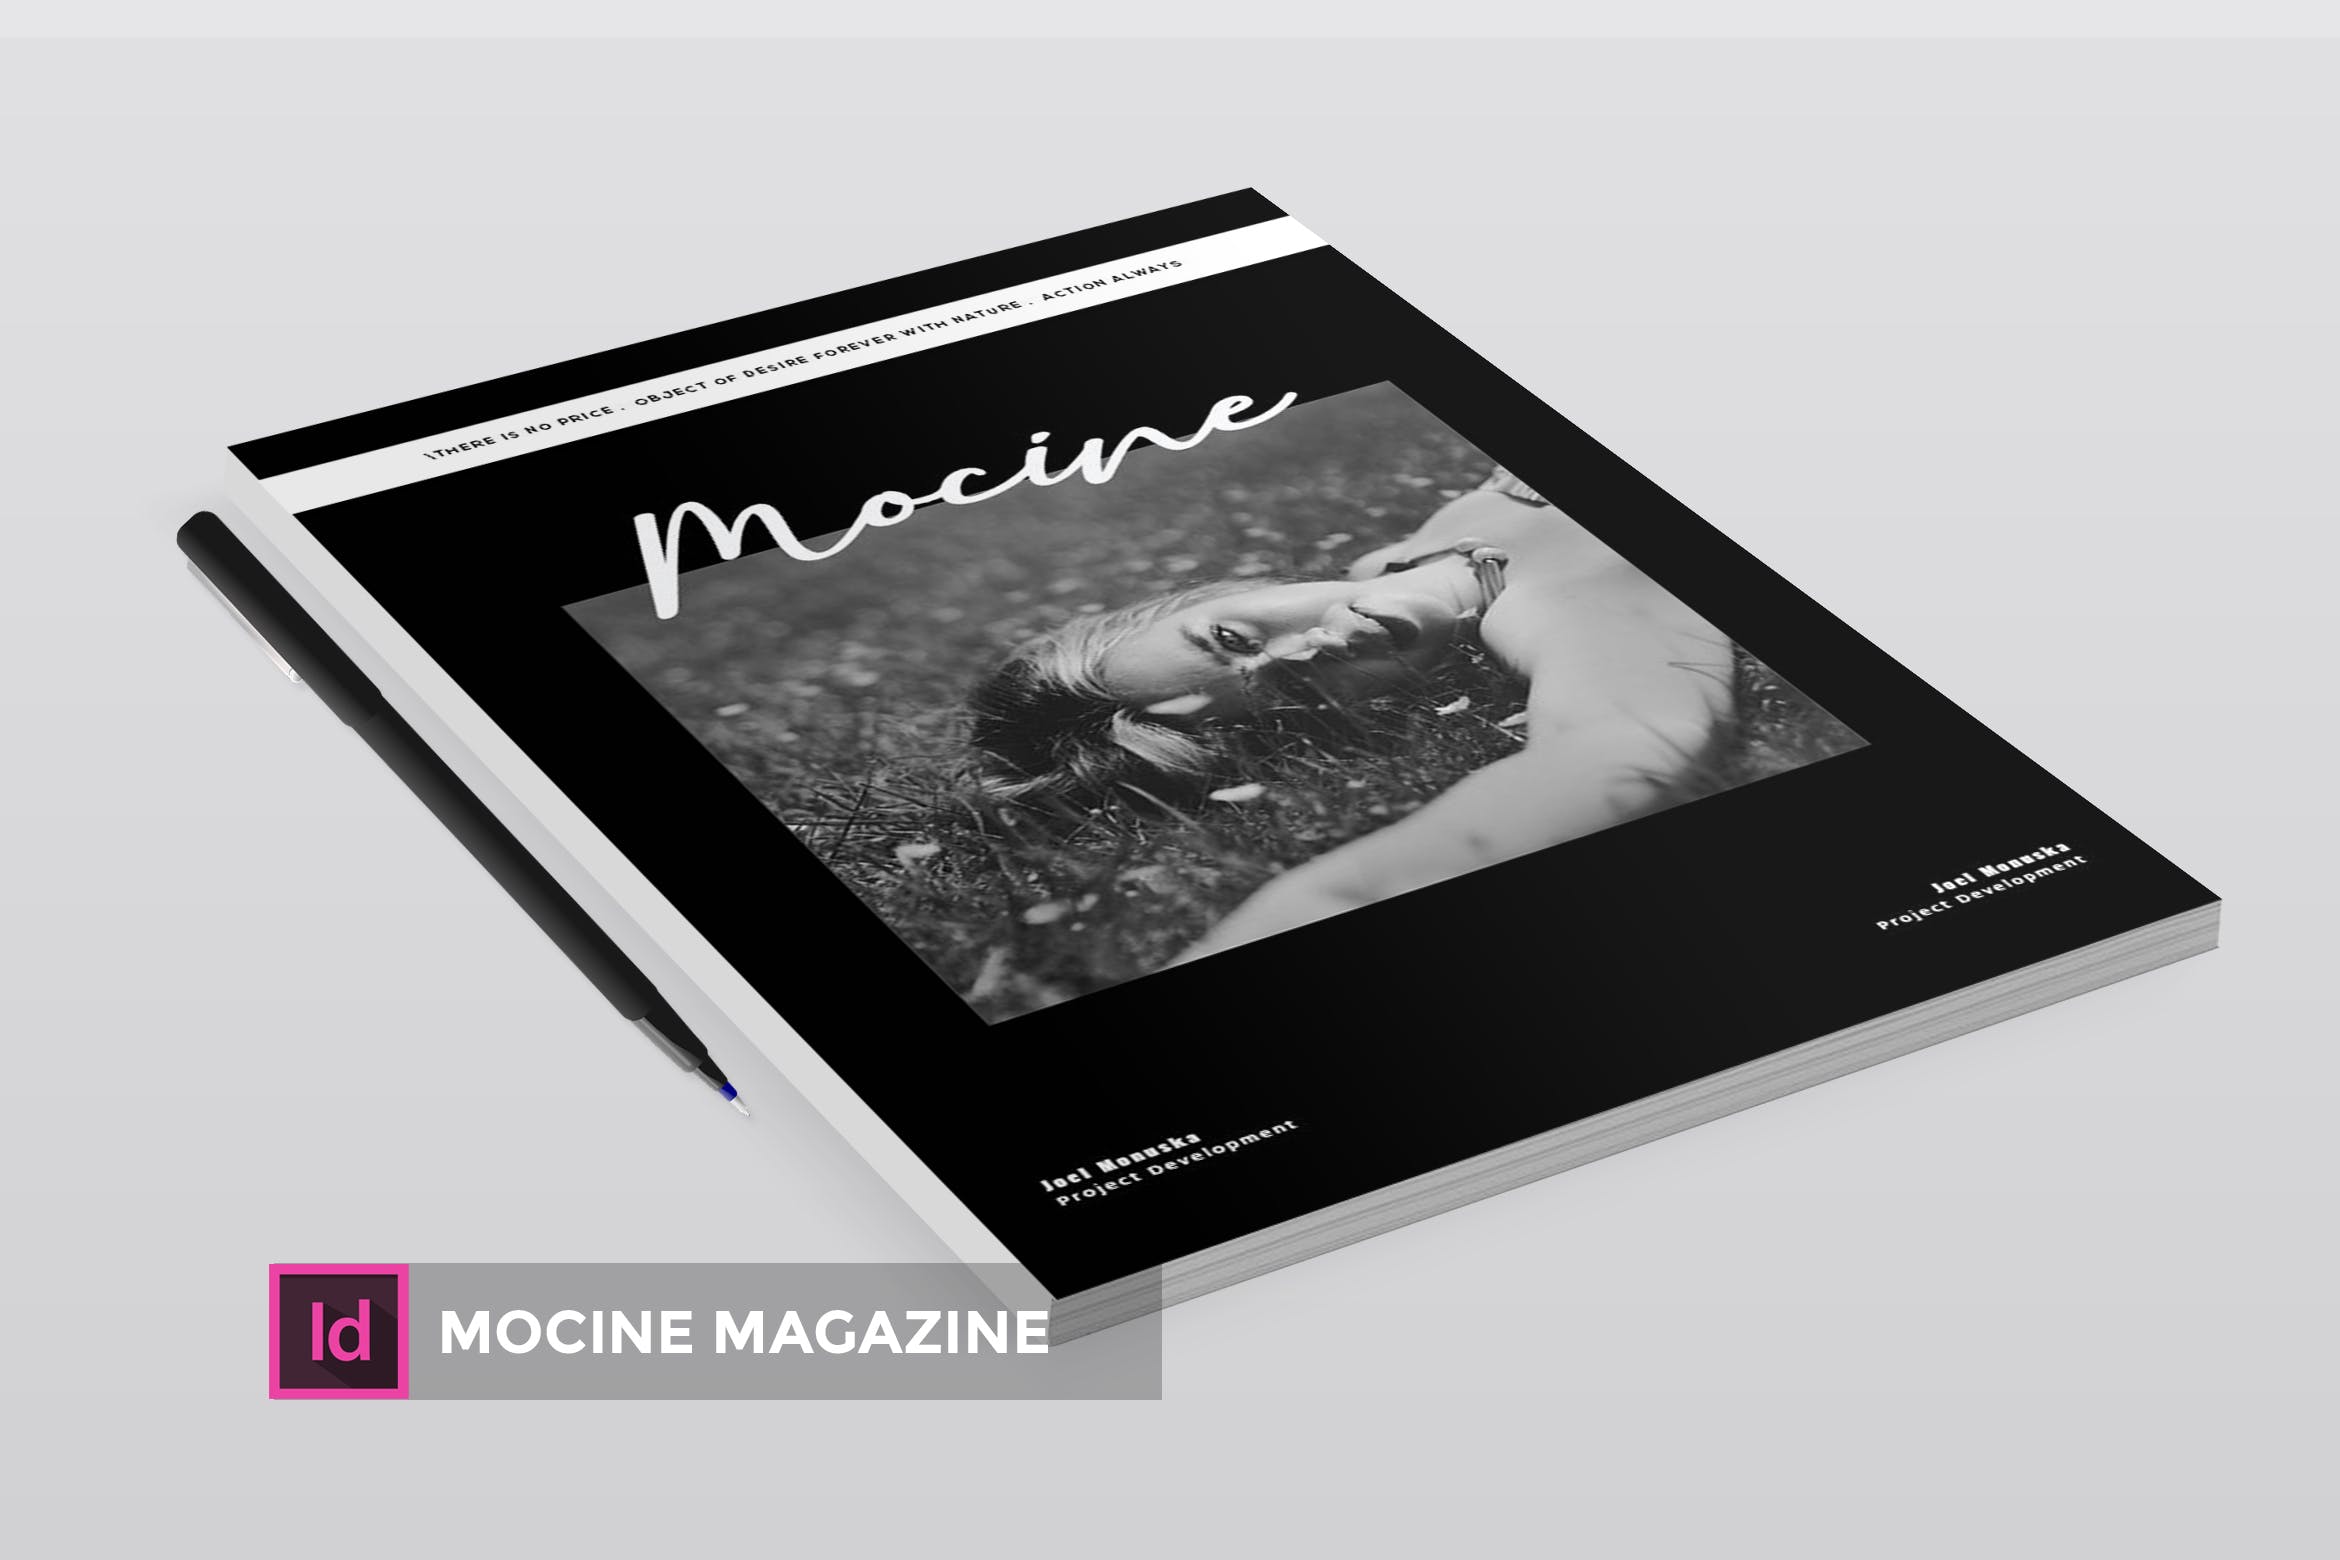 高端人物/摄影/时尚主题蚂蚁素材精选杂志版式排版设计INDD模板 Mocine | Magazine Template插图